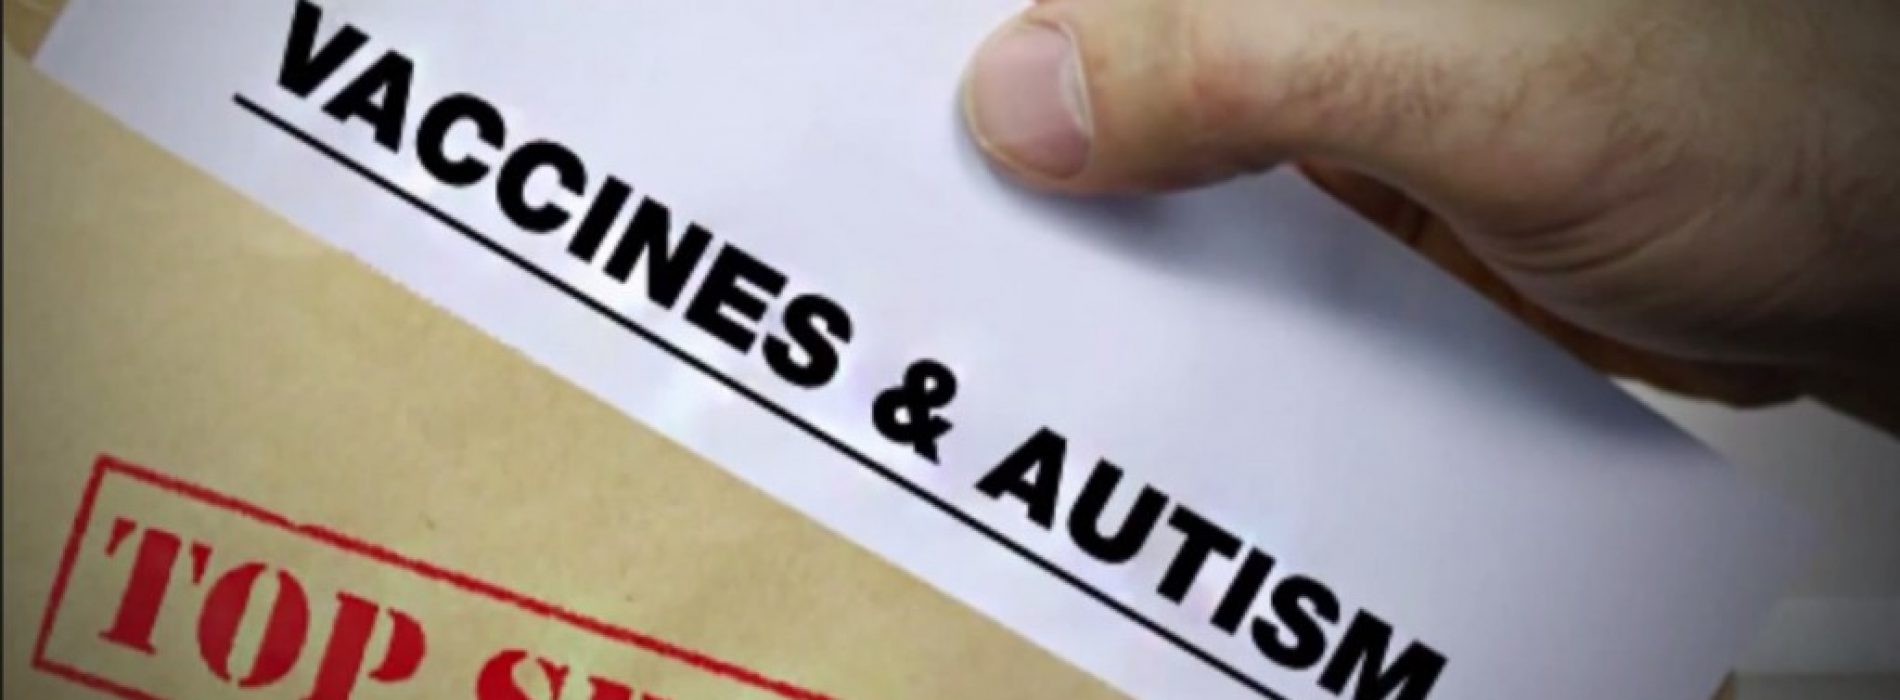 CBS-journalist: “Wetenschapper geeft toe dat gegevens over vaccins en autisme werden vernietigd”